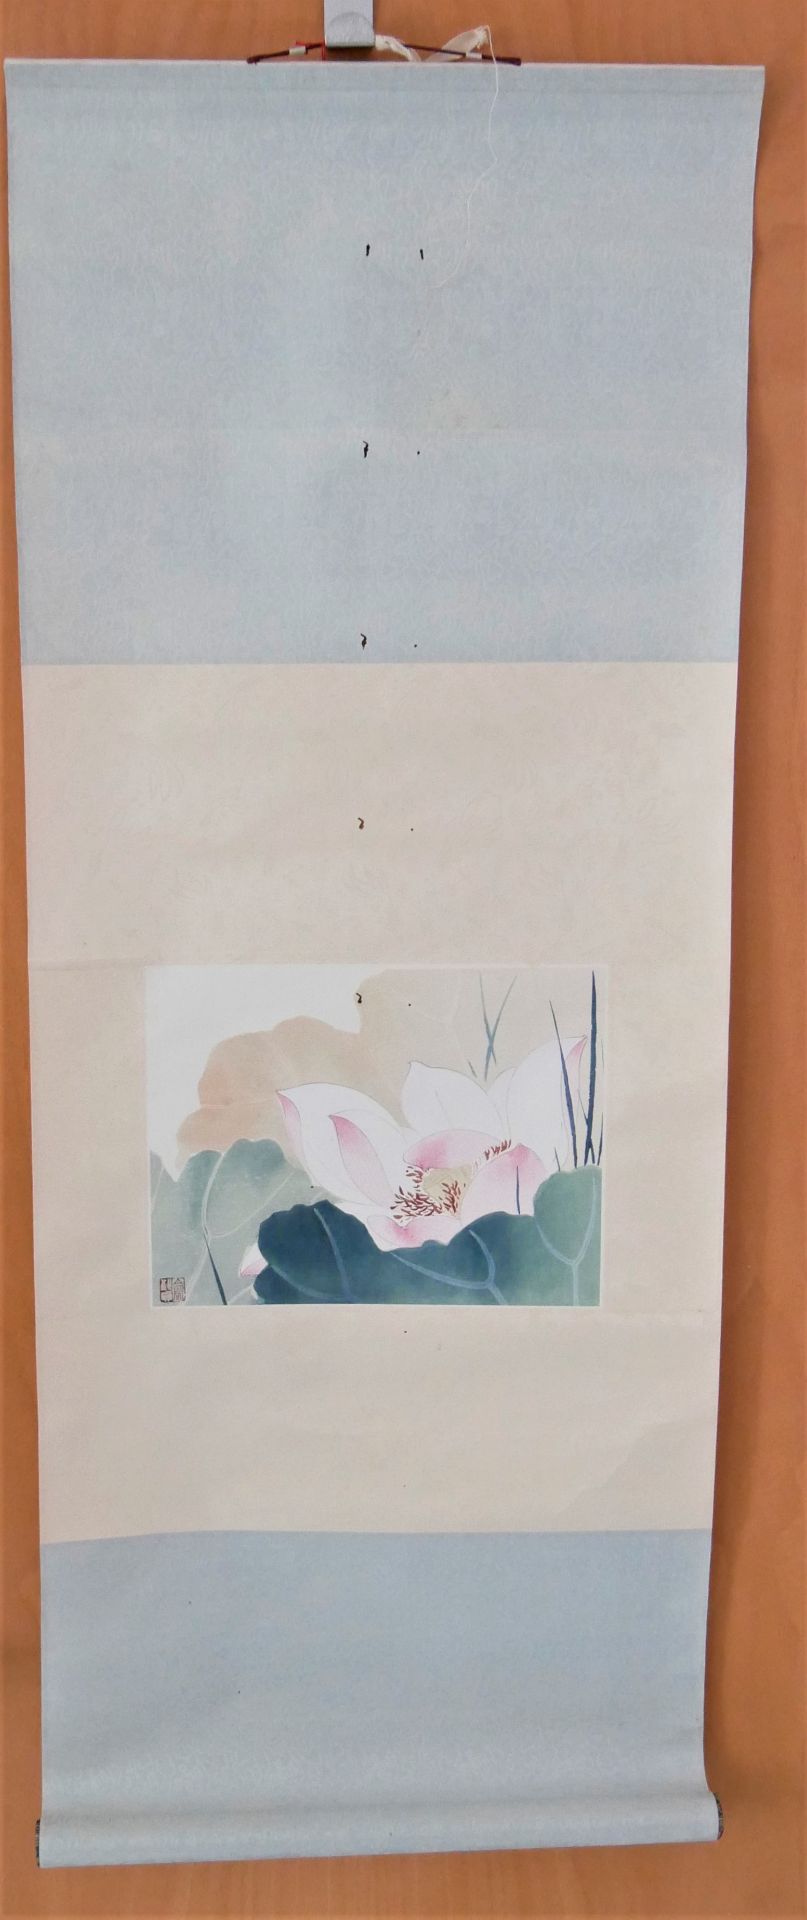 Yu Chih-chen (1965-) - Lotus Flower, Aquarell auf Papier, auf Rolle. Hier Fraßstellen.